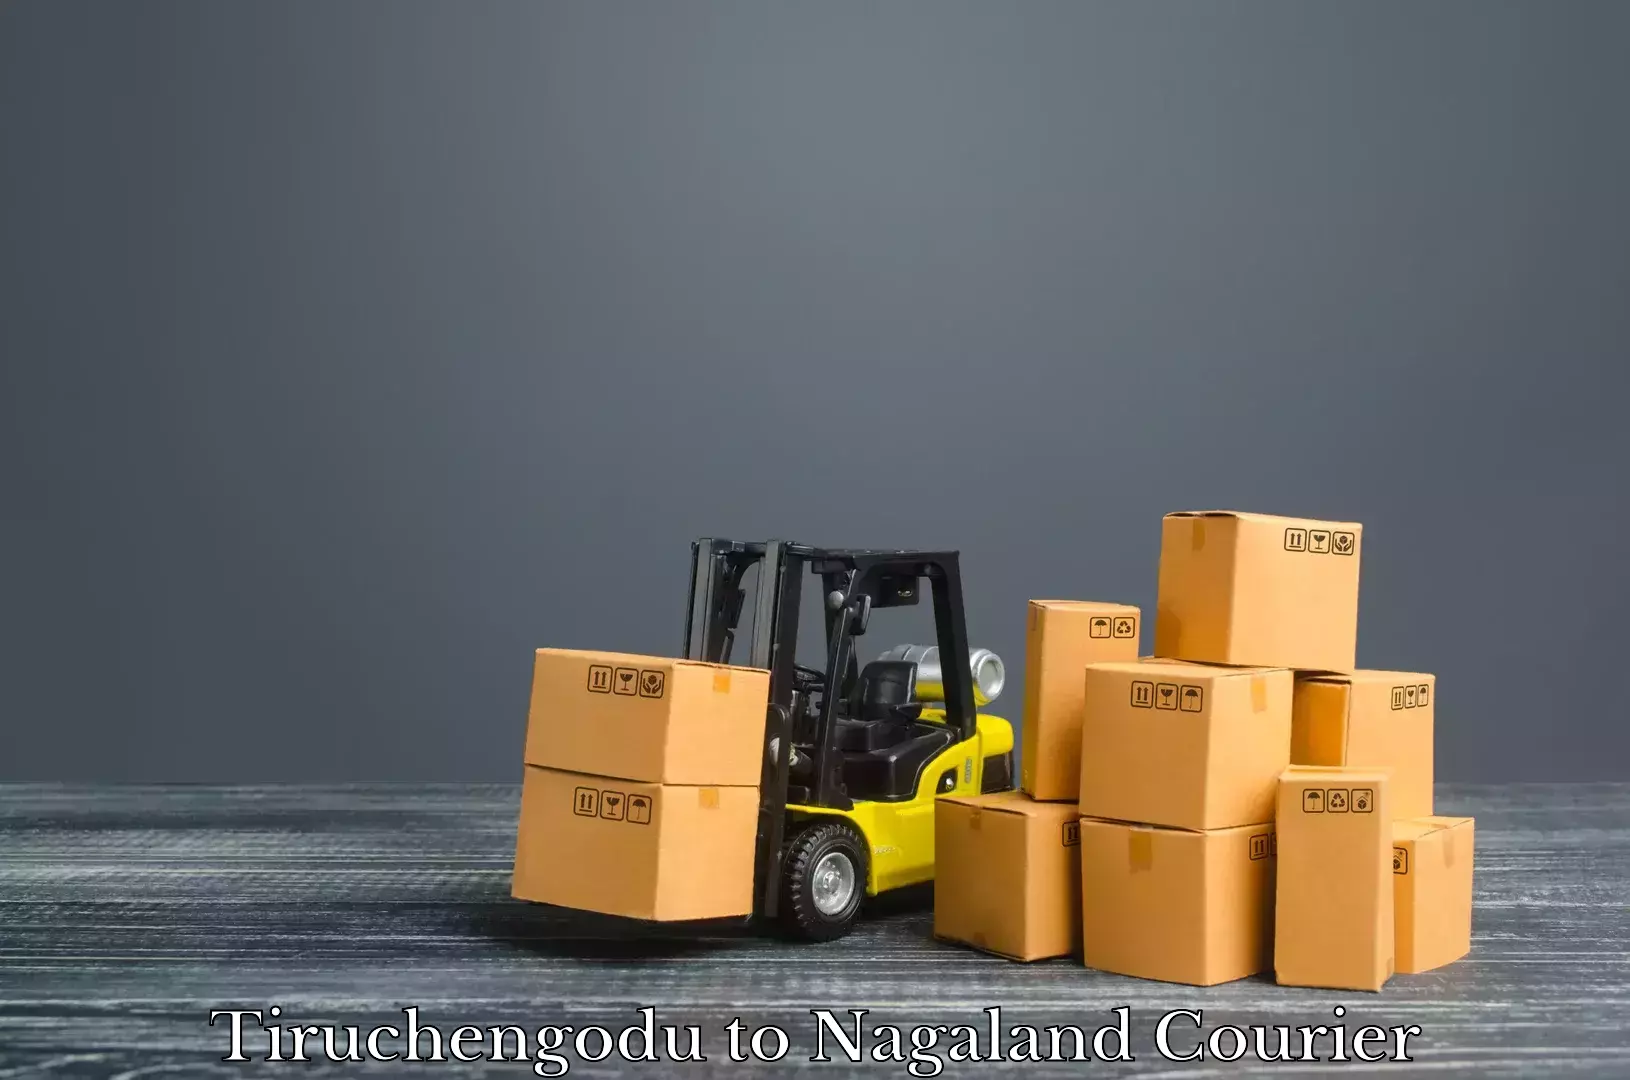 Luggage transport service Tiruchengodu to Nagaland